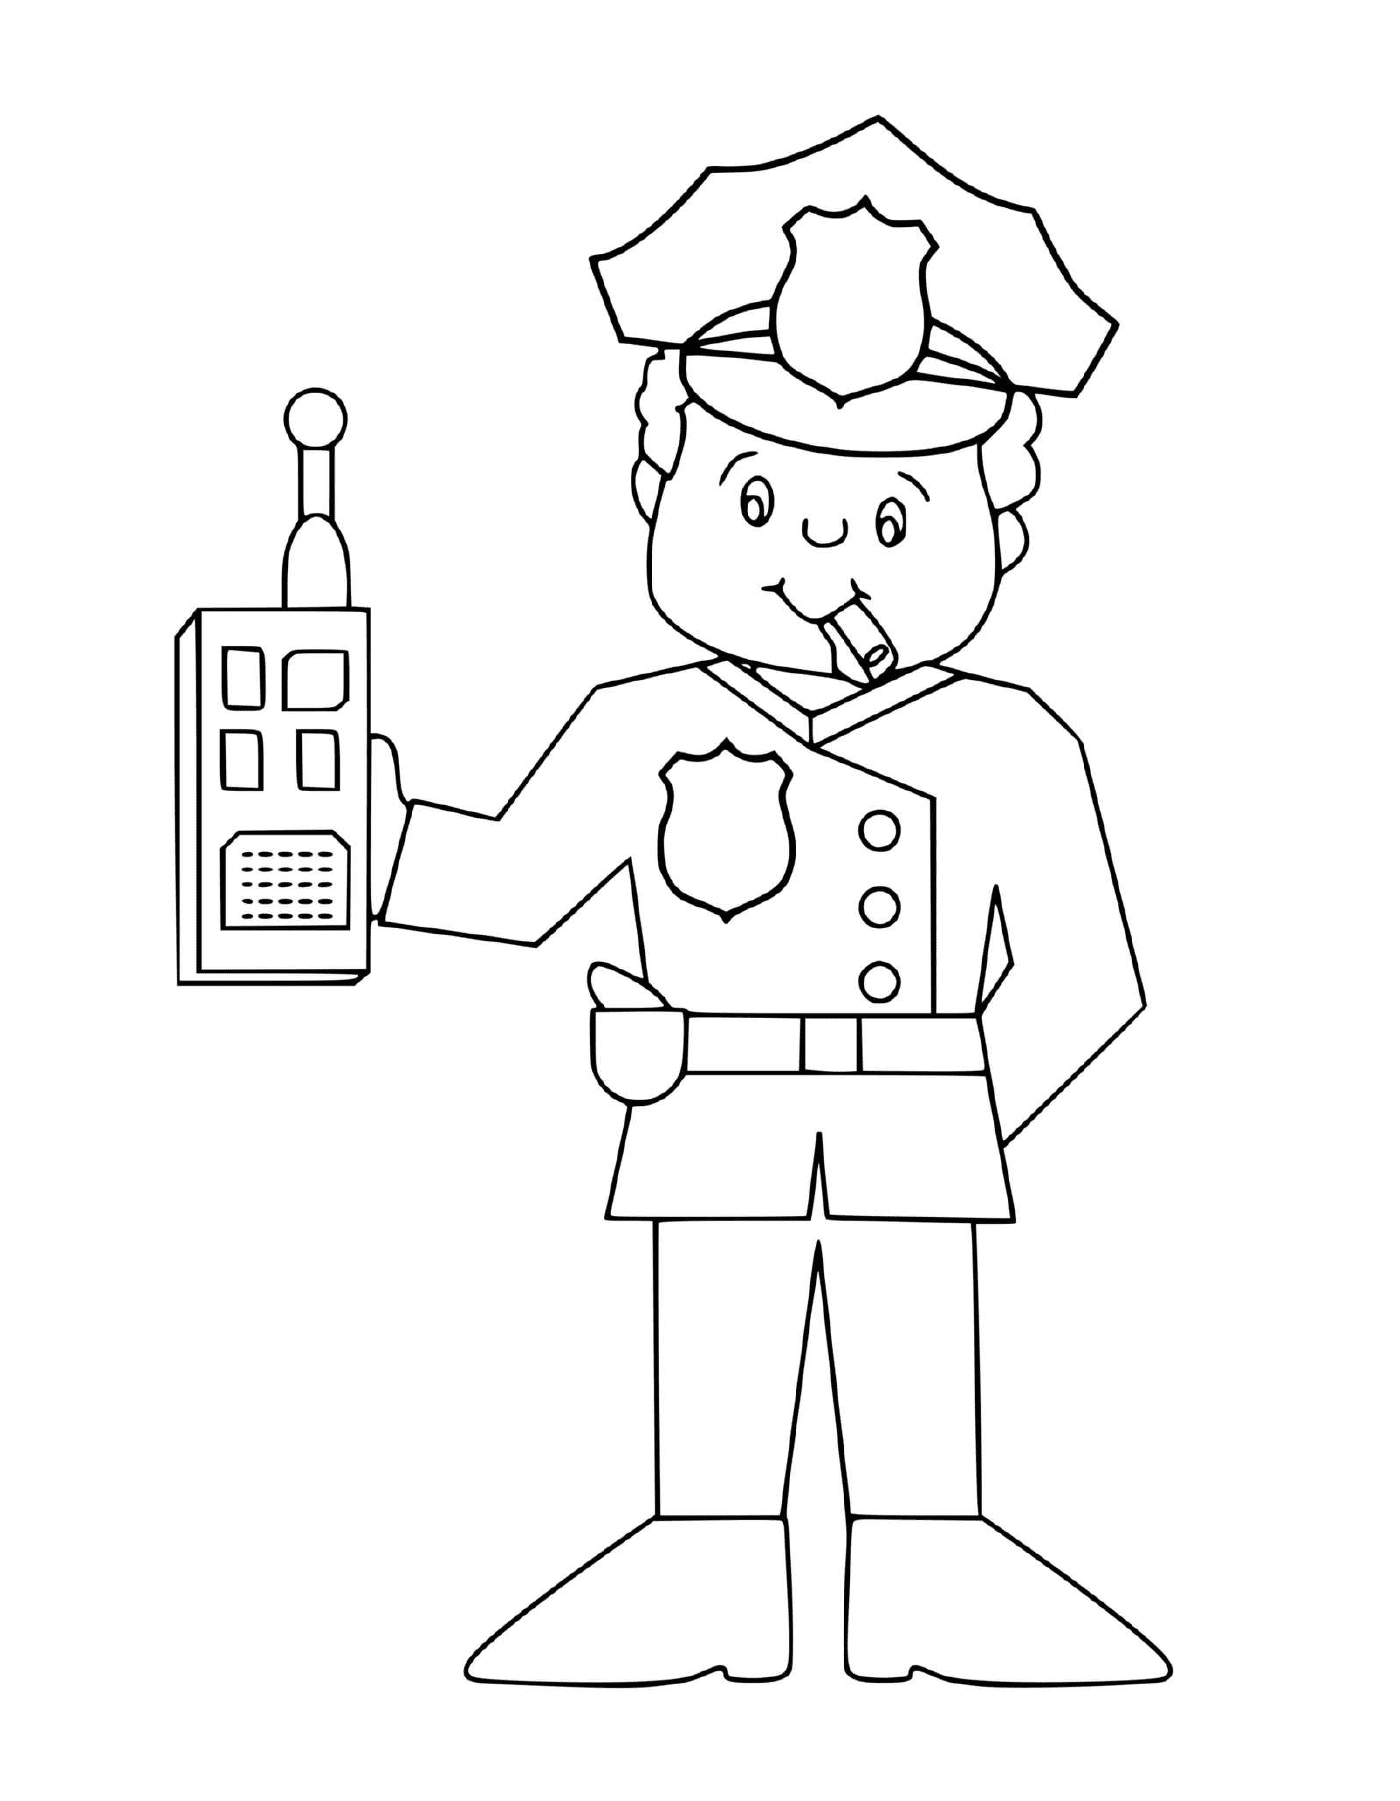  Policeman with portable radio 